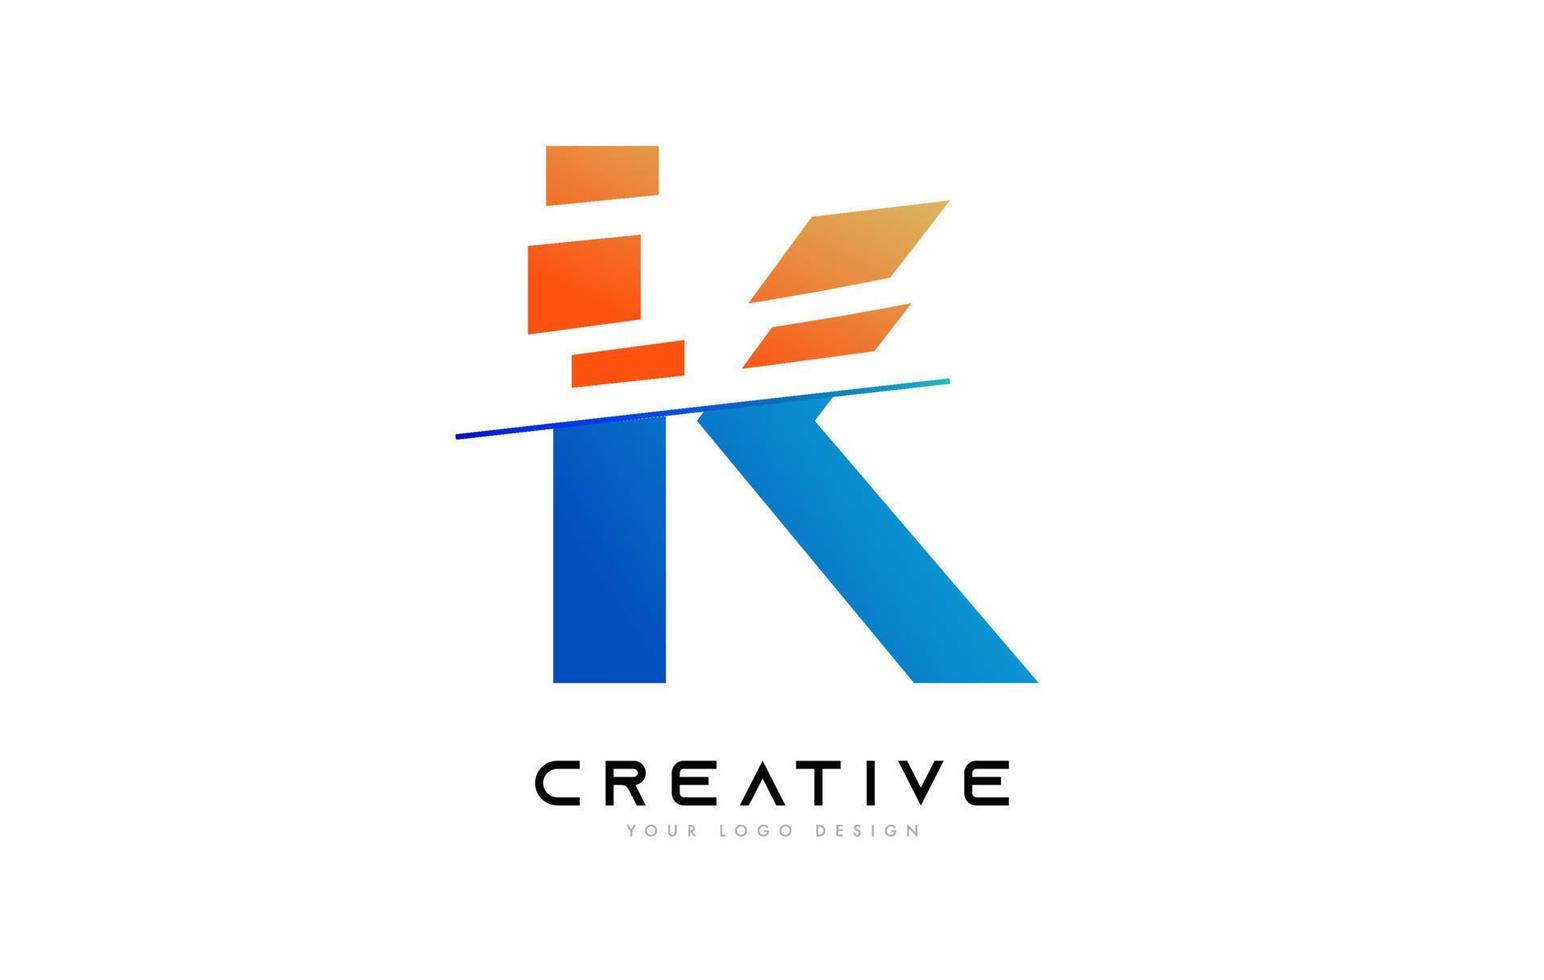 geschnittenes buchstabe k logo icon design mit blauen und orangefarbenen farben und geschnittenen scheiben vektor